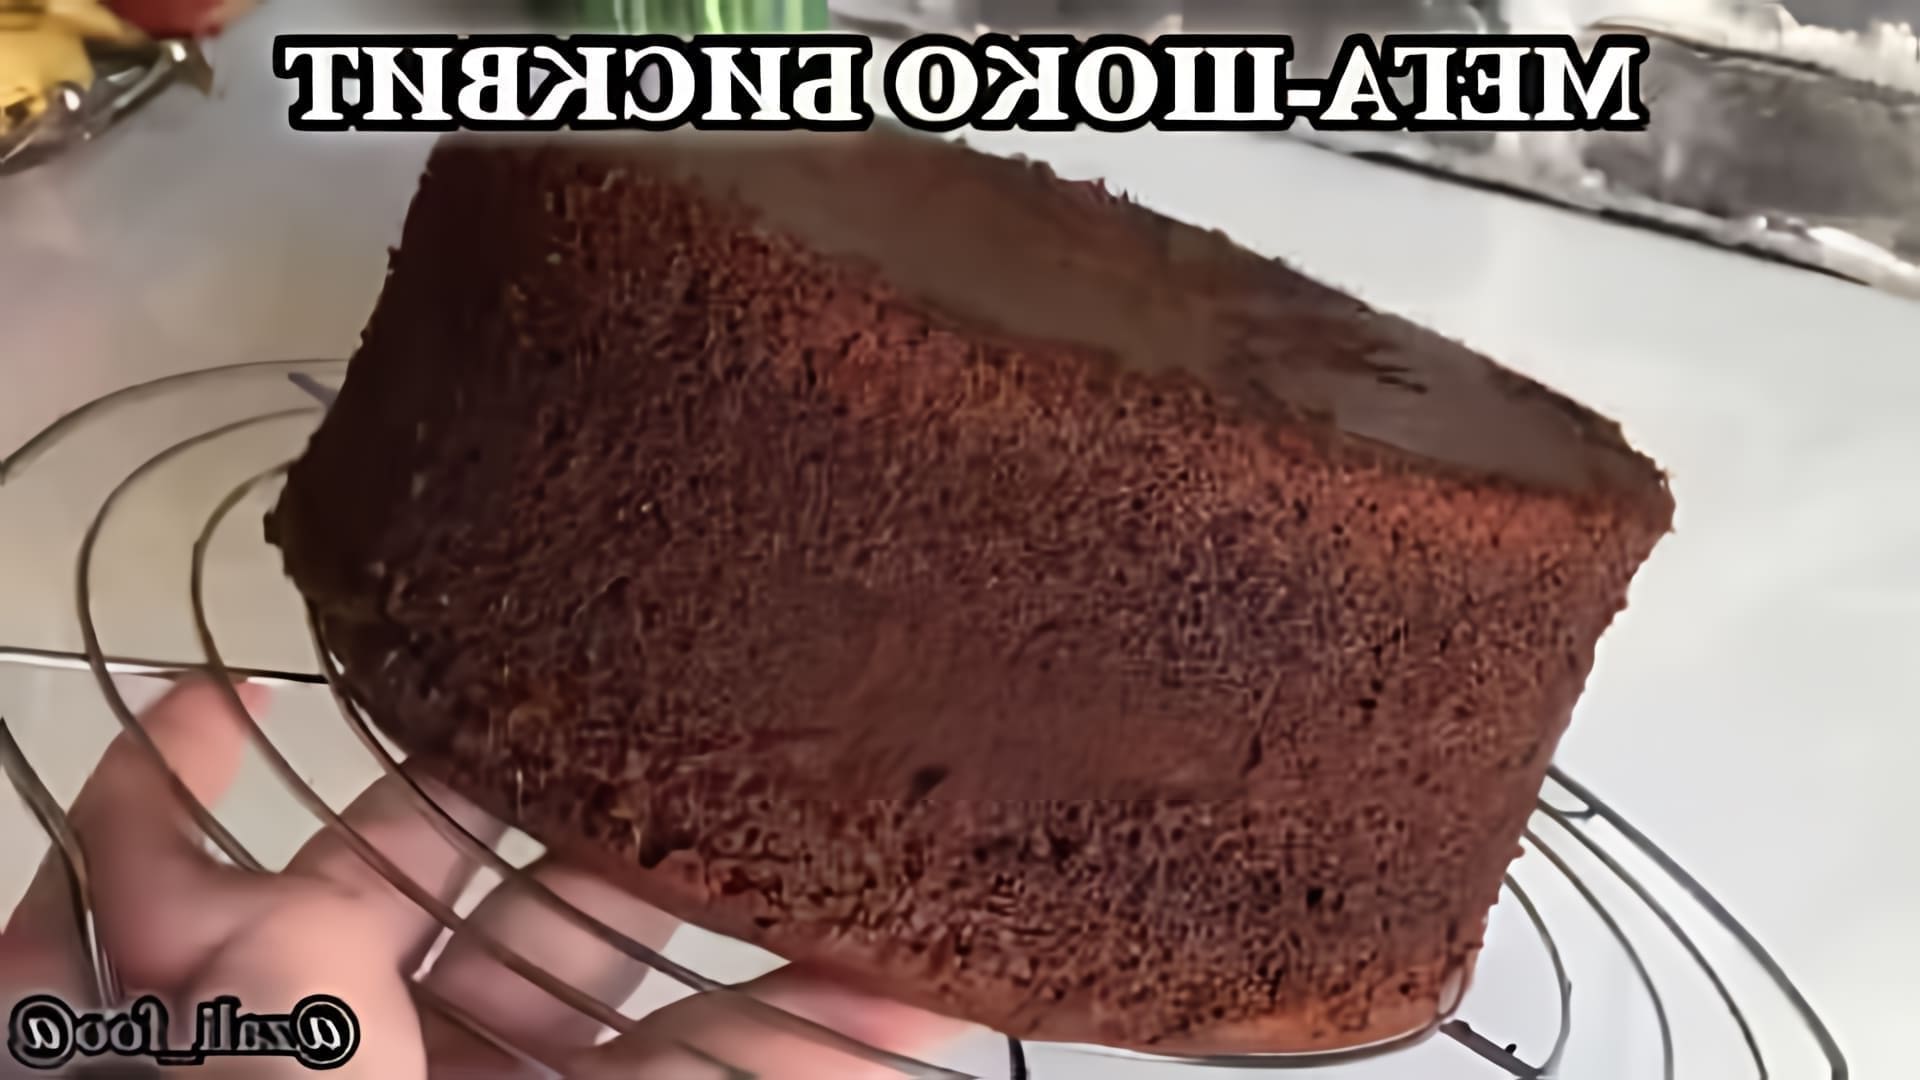 В этом видео-ролике вы увидите, как приготовить шоколадный бисквит, который будет самым пышным, воздушным и влажным